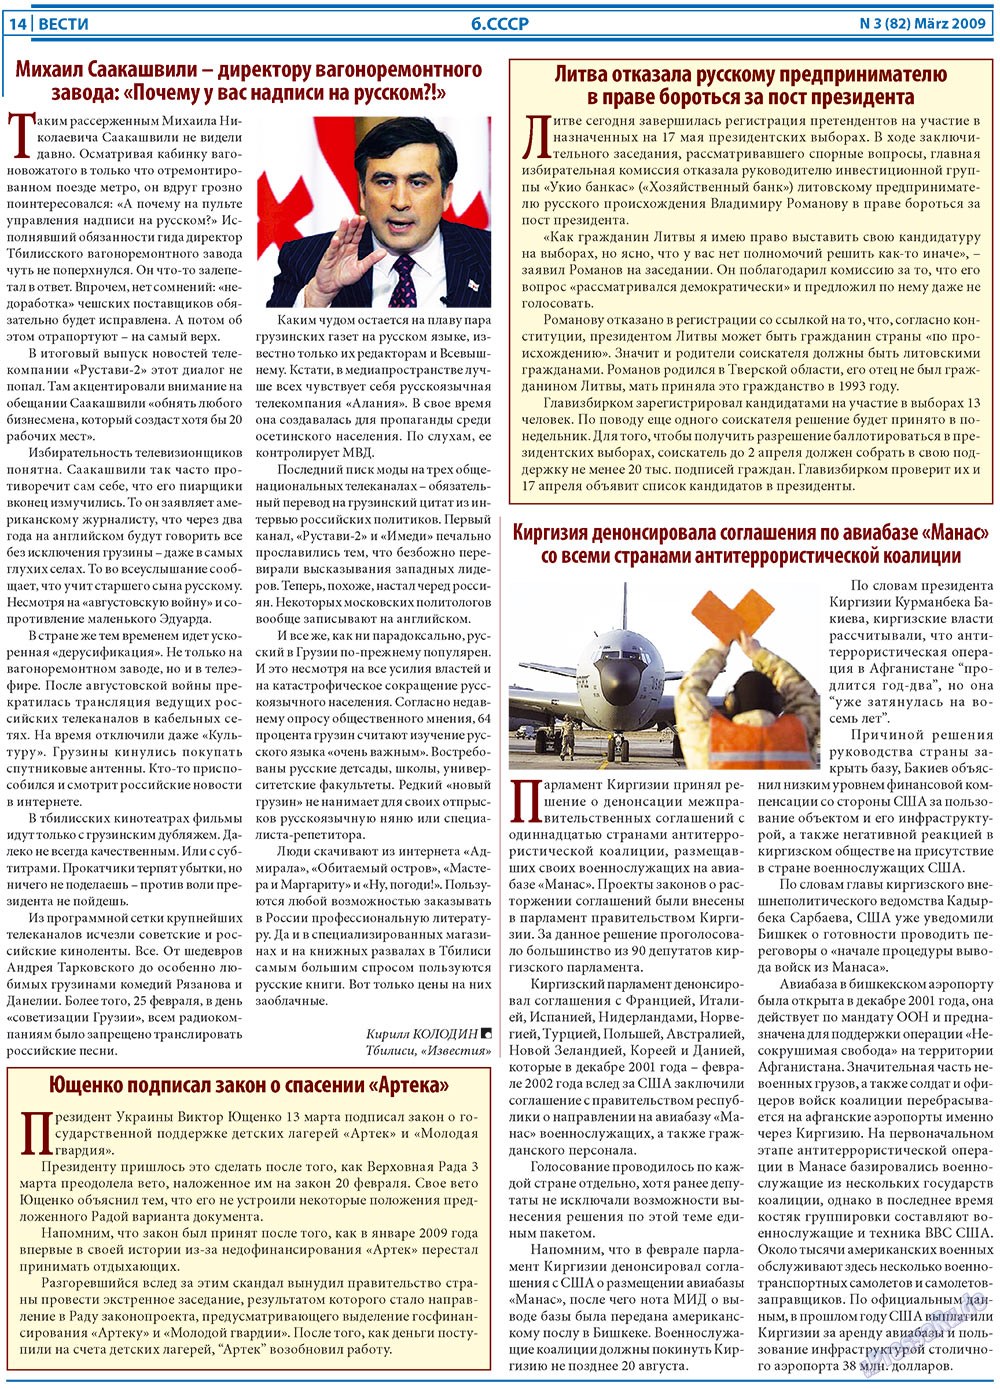 Вести, газета. 2009 №3 стр.14